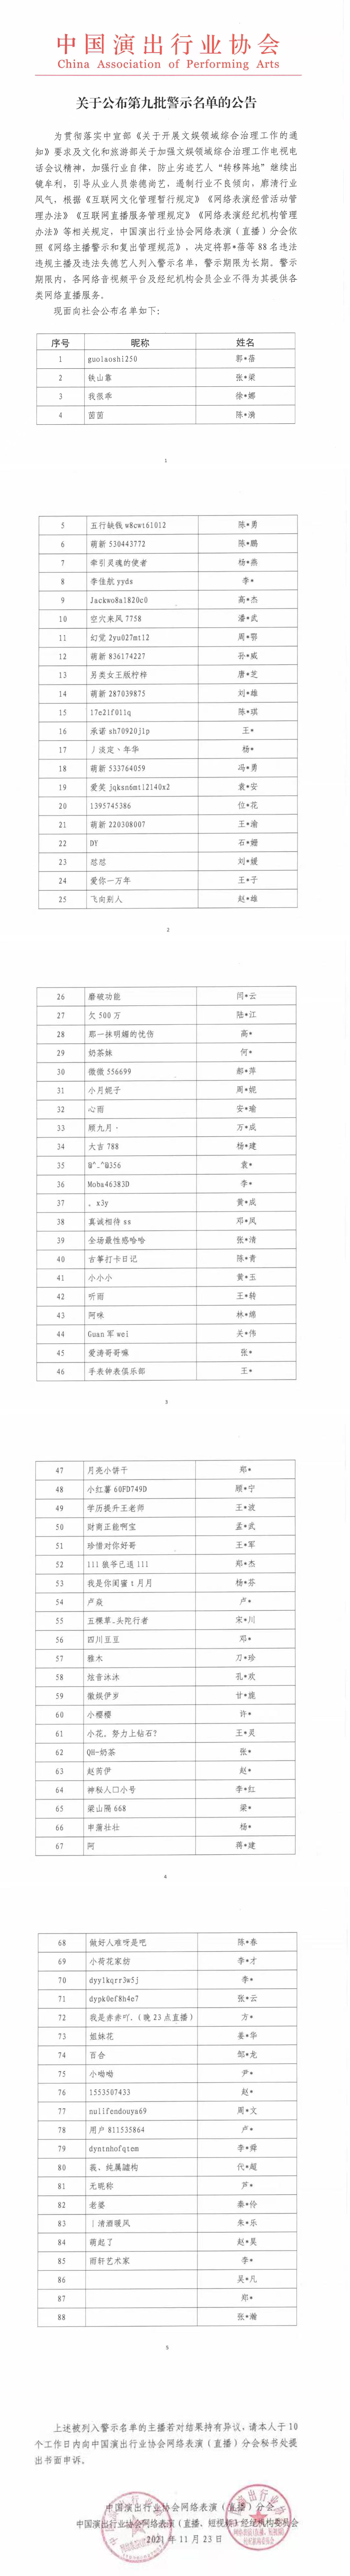 第九批网络主播警示名单公布 吴亦凡、郑爽等88人在列